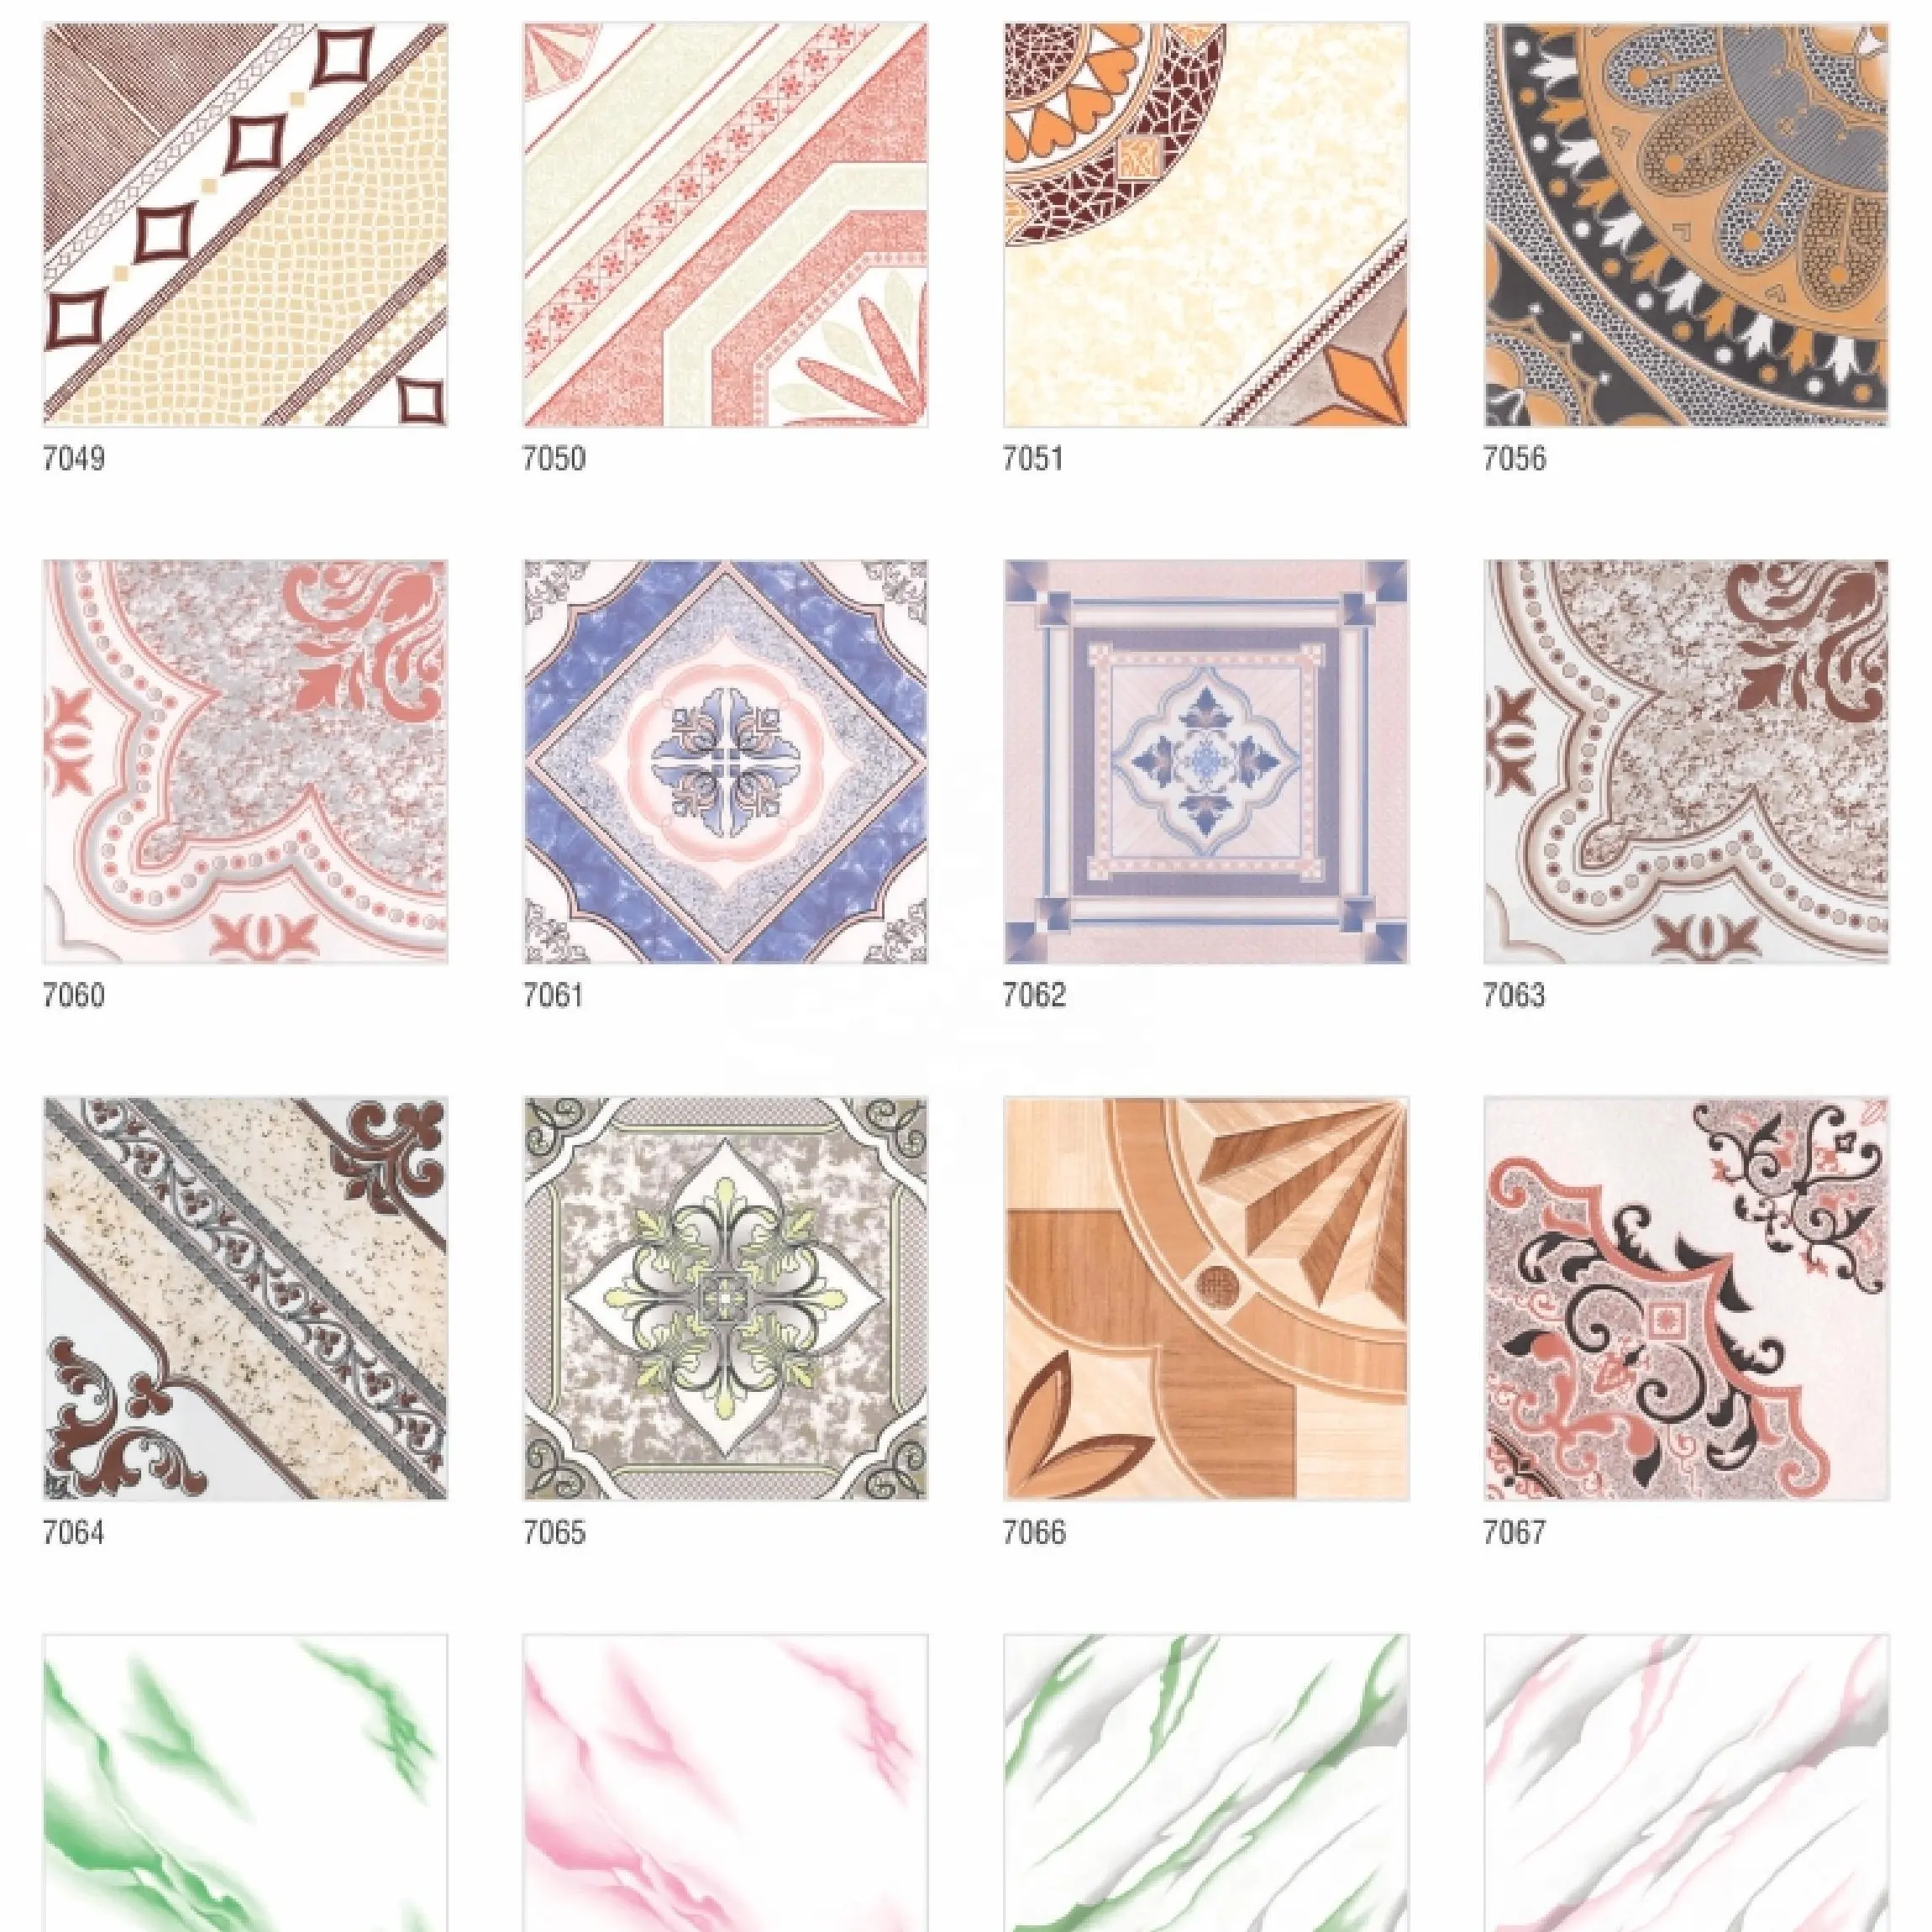 Vistaar Brand Ordinary Printed Design Inkjet Ceramic Floor Tiles 30 × 30 300 × 300 400 × 400 40 × 40 12 × 12 16 × 16 Glazed Porcelain Tiles